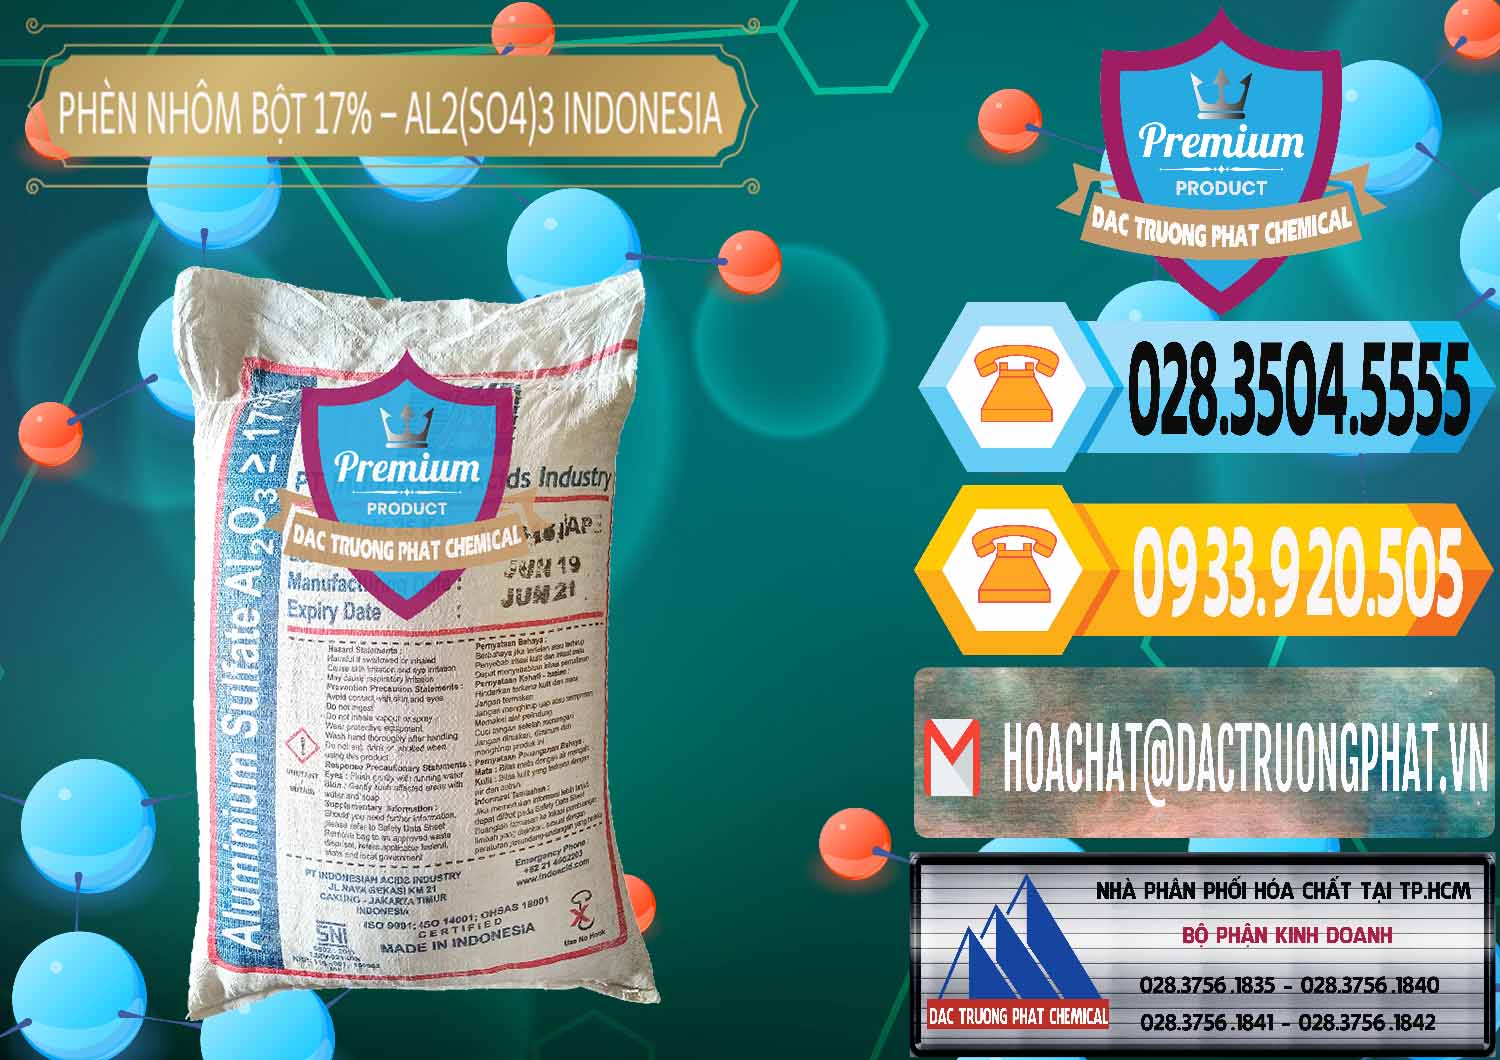 Chuyên bán - phân phối Phèn Nhôm Bột - Al2(SO4)3 17% bao 25kg Indonesia - 0114 - Nơi chuyên kinh doanh - cung cấp hóa chất tại TP.HCM - hoachattayrua.net